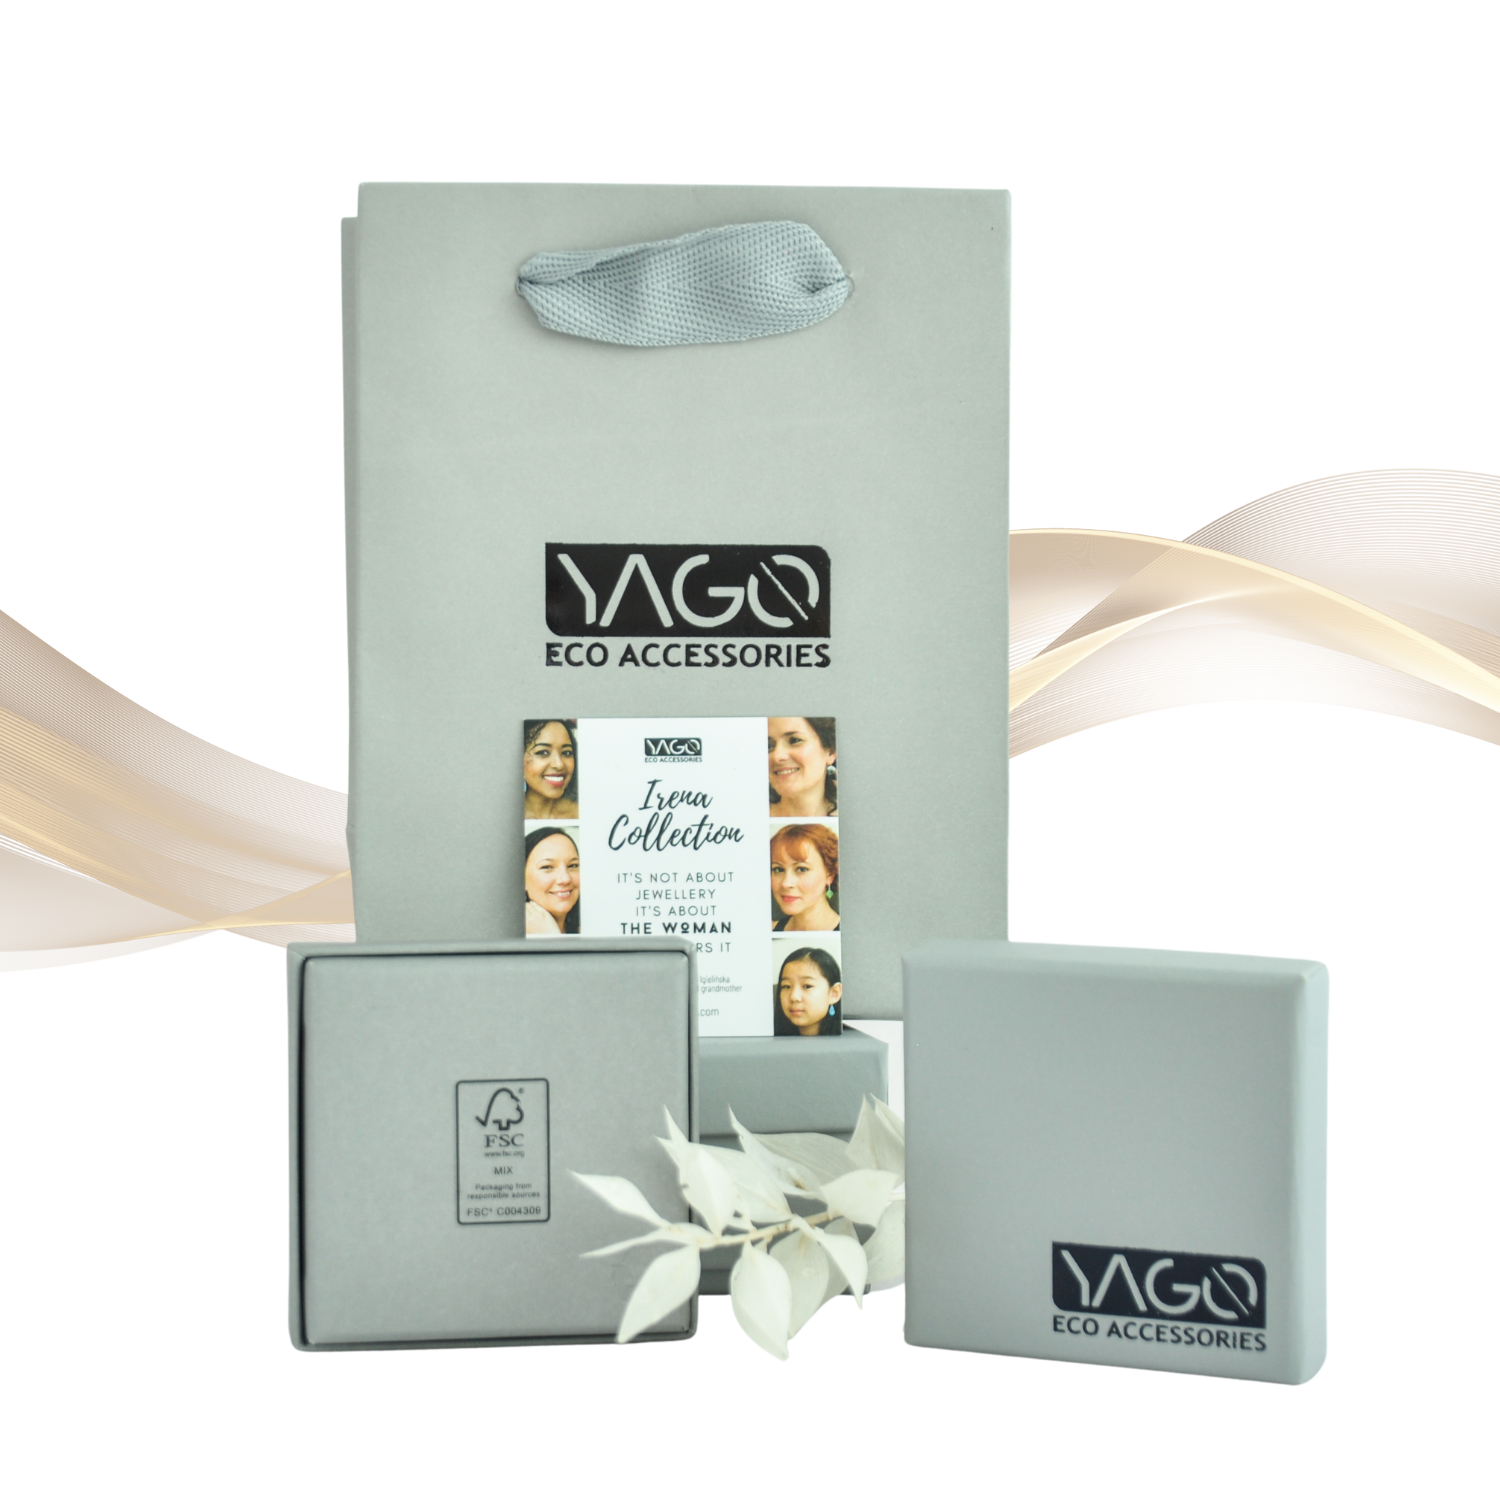 YagoEco sustainable jewellery brand